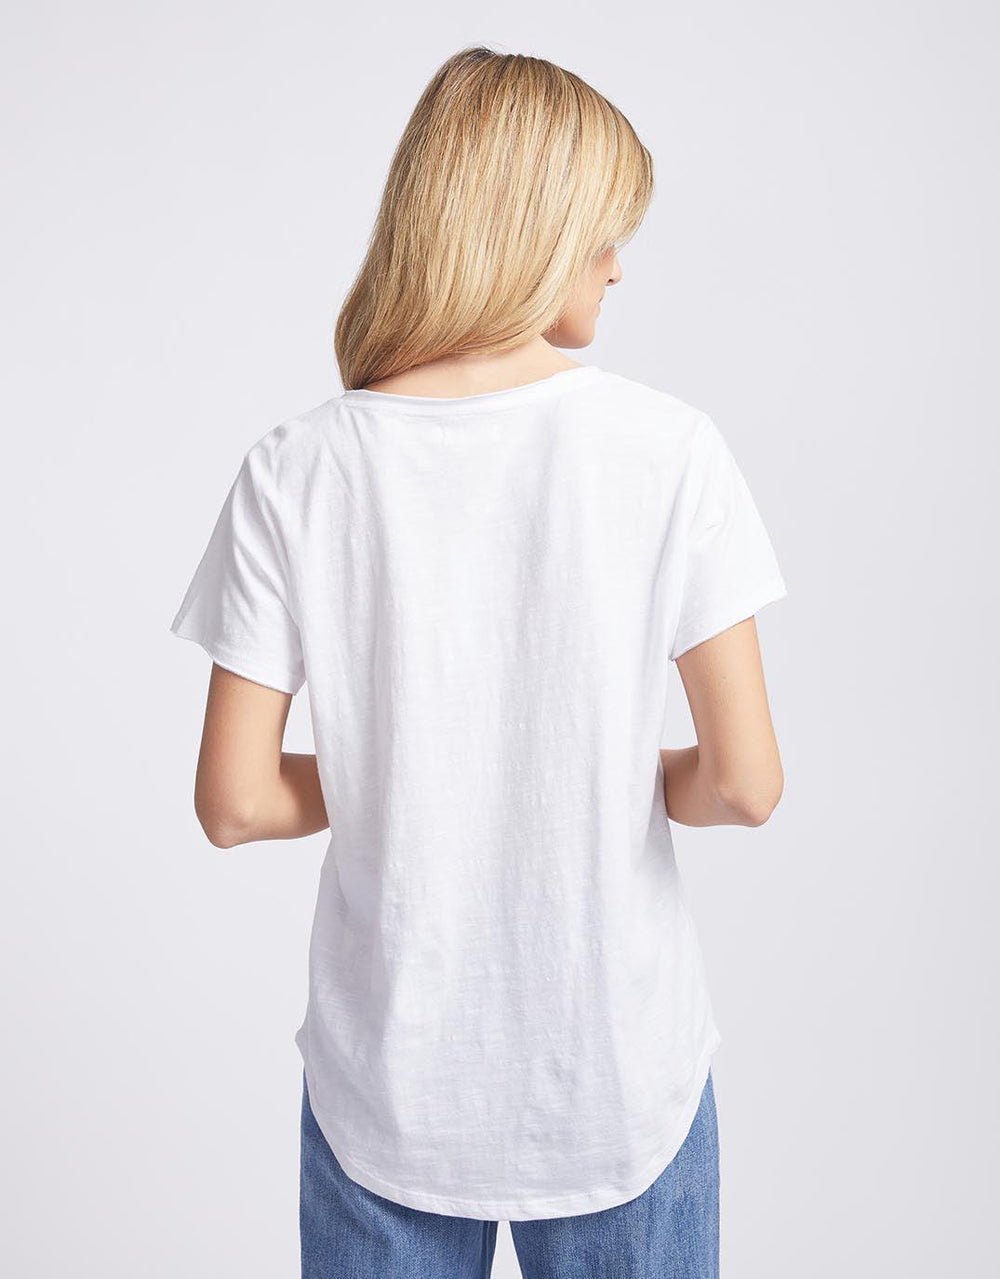 White & Co. - Original V Neck T-Shirt - White - White & Co Living Tops